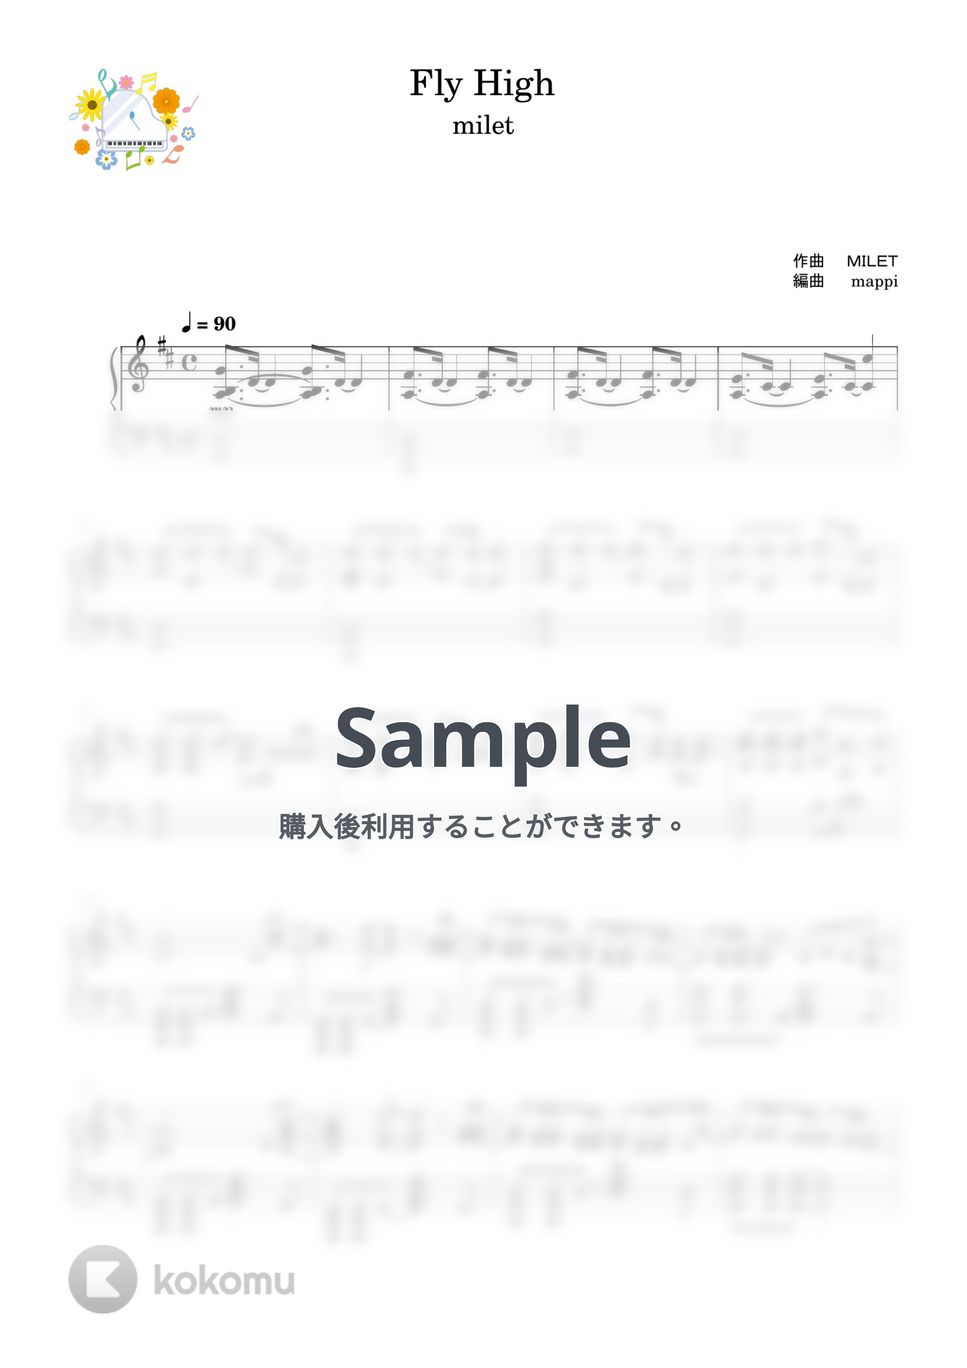 milet - Fly High (私にも弾ける / NHKウィンタースポーツテーマソング / シンプルアレンジ) by pup-mappi